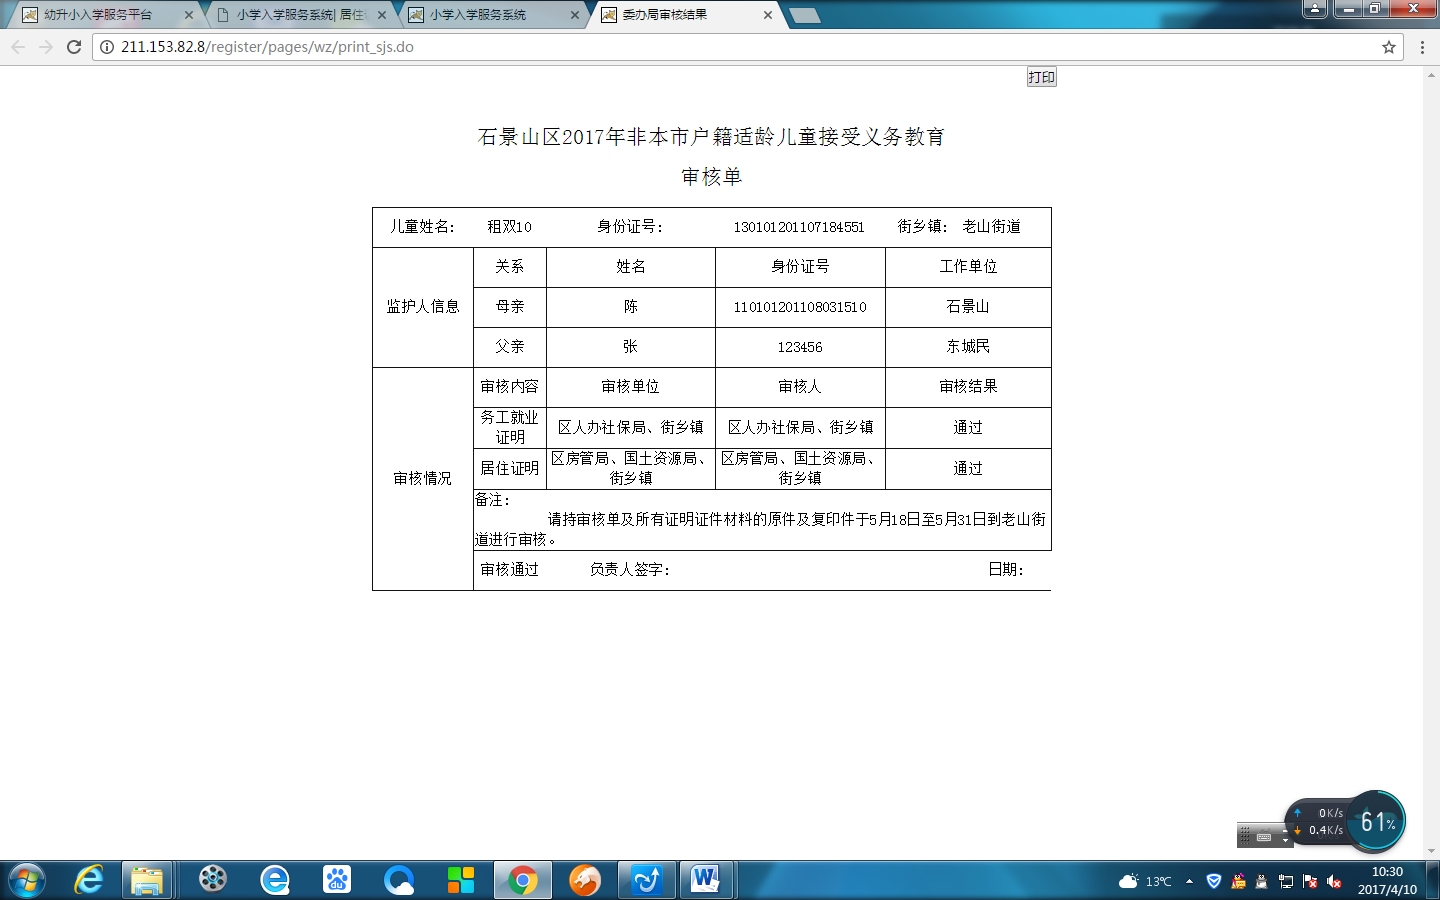 非北京市户籍适龄儿童入学信息采集流程图8